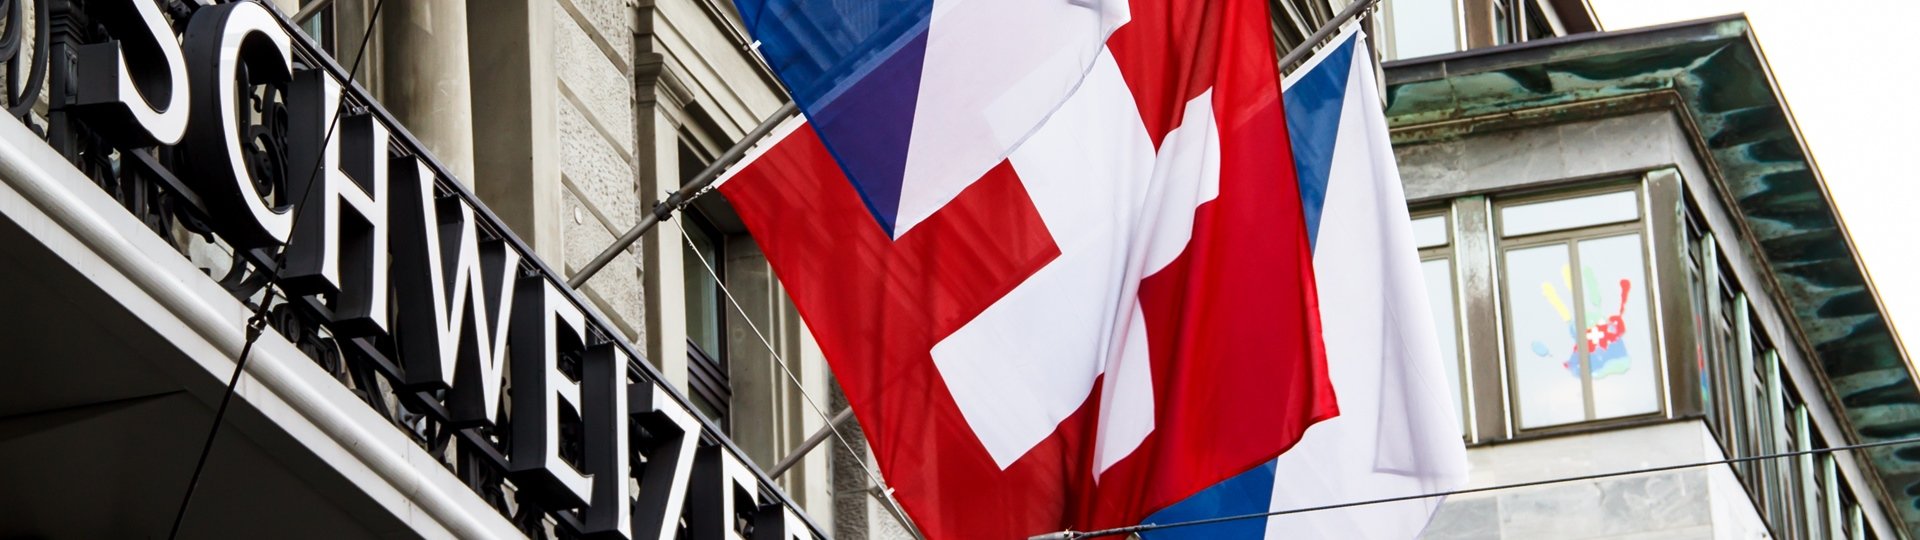 Proč švýcarská národní banka opustila svůj kurzový závazek?